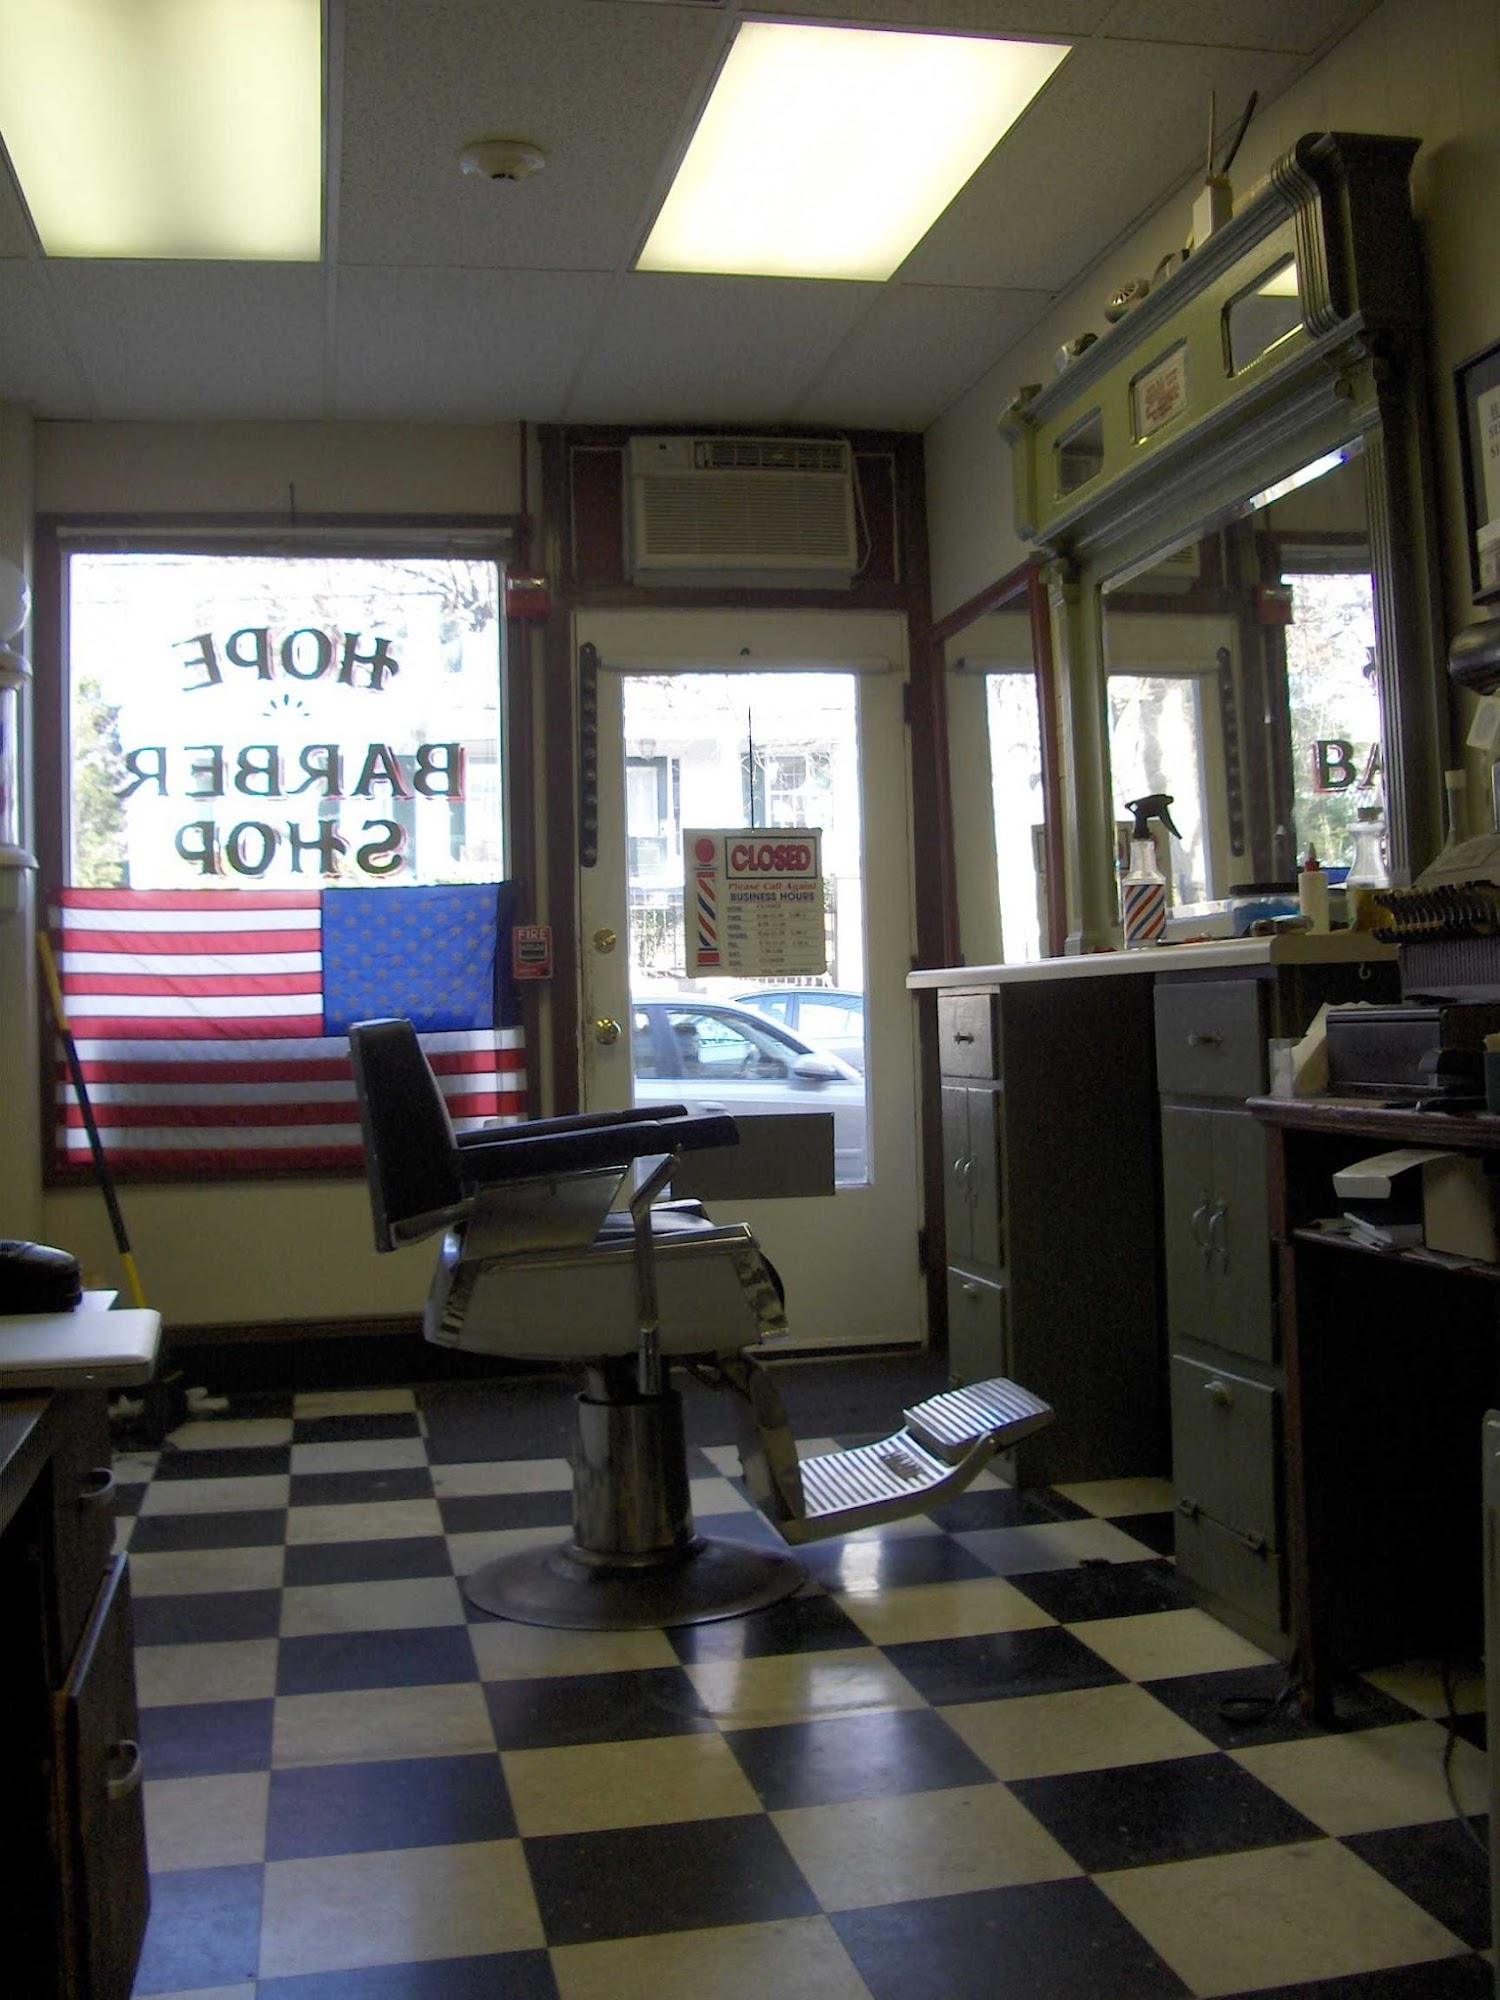 Hope Barber Shop 475 Hope St, Bristol Rhode Island 02809